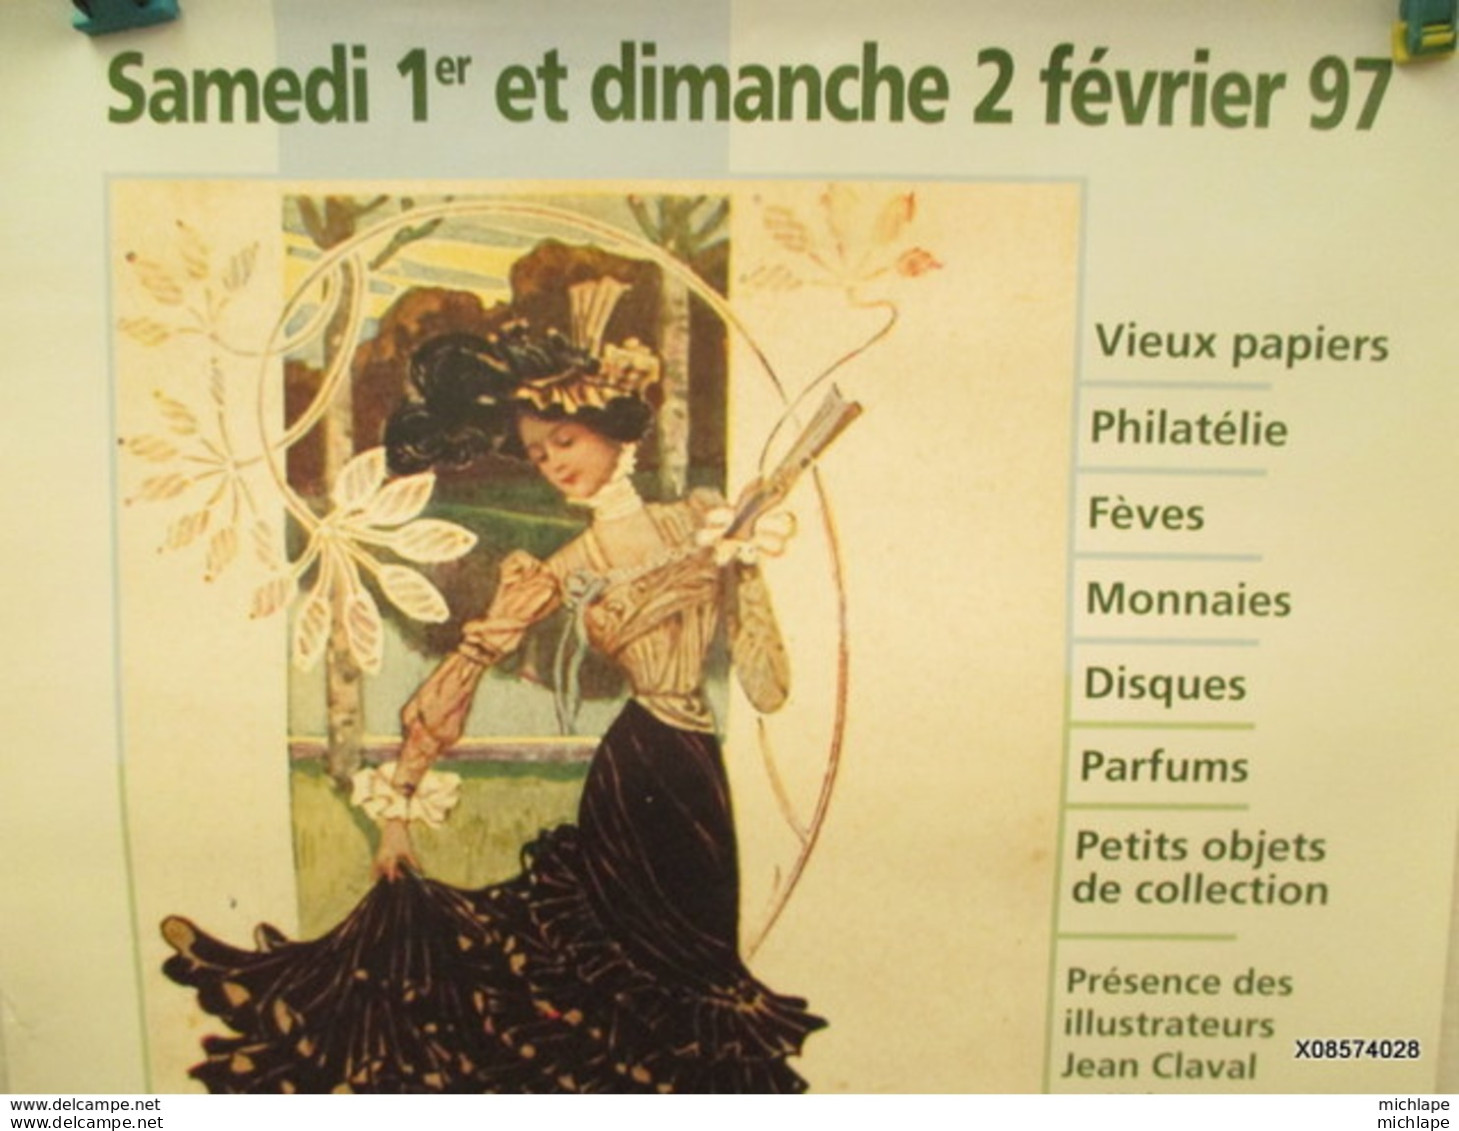 Affiche -   Bourse Cartes Postales  St Julien (Troyes)  -fevrier 1997  40 Cm Sur 60 Cm - Affiches